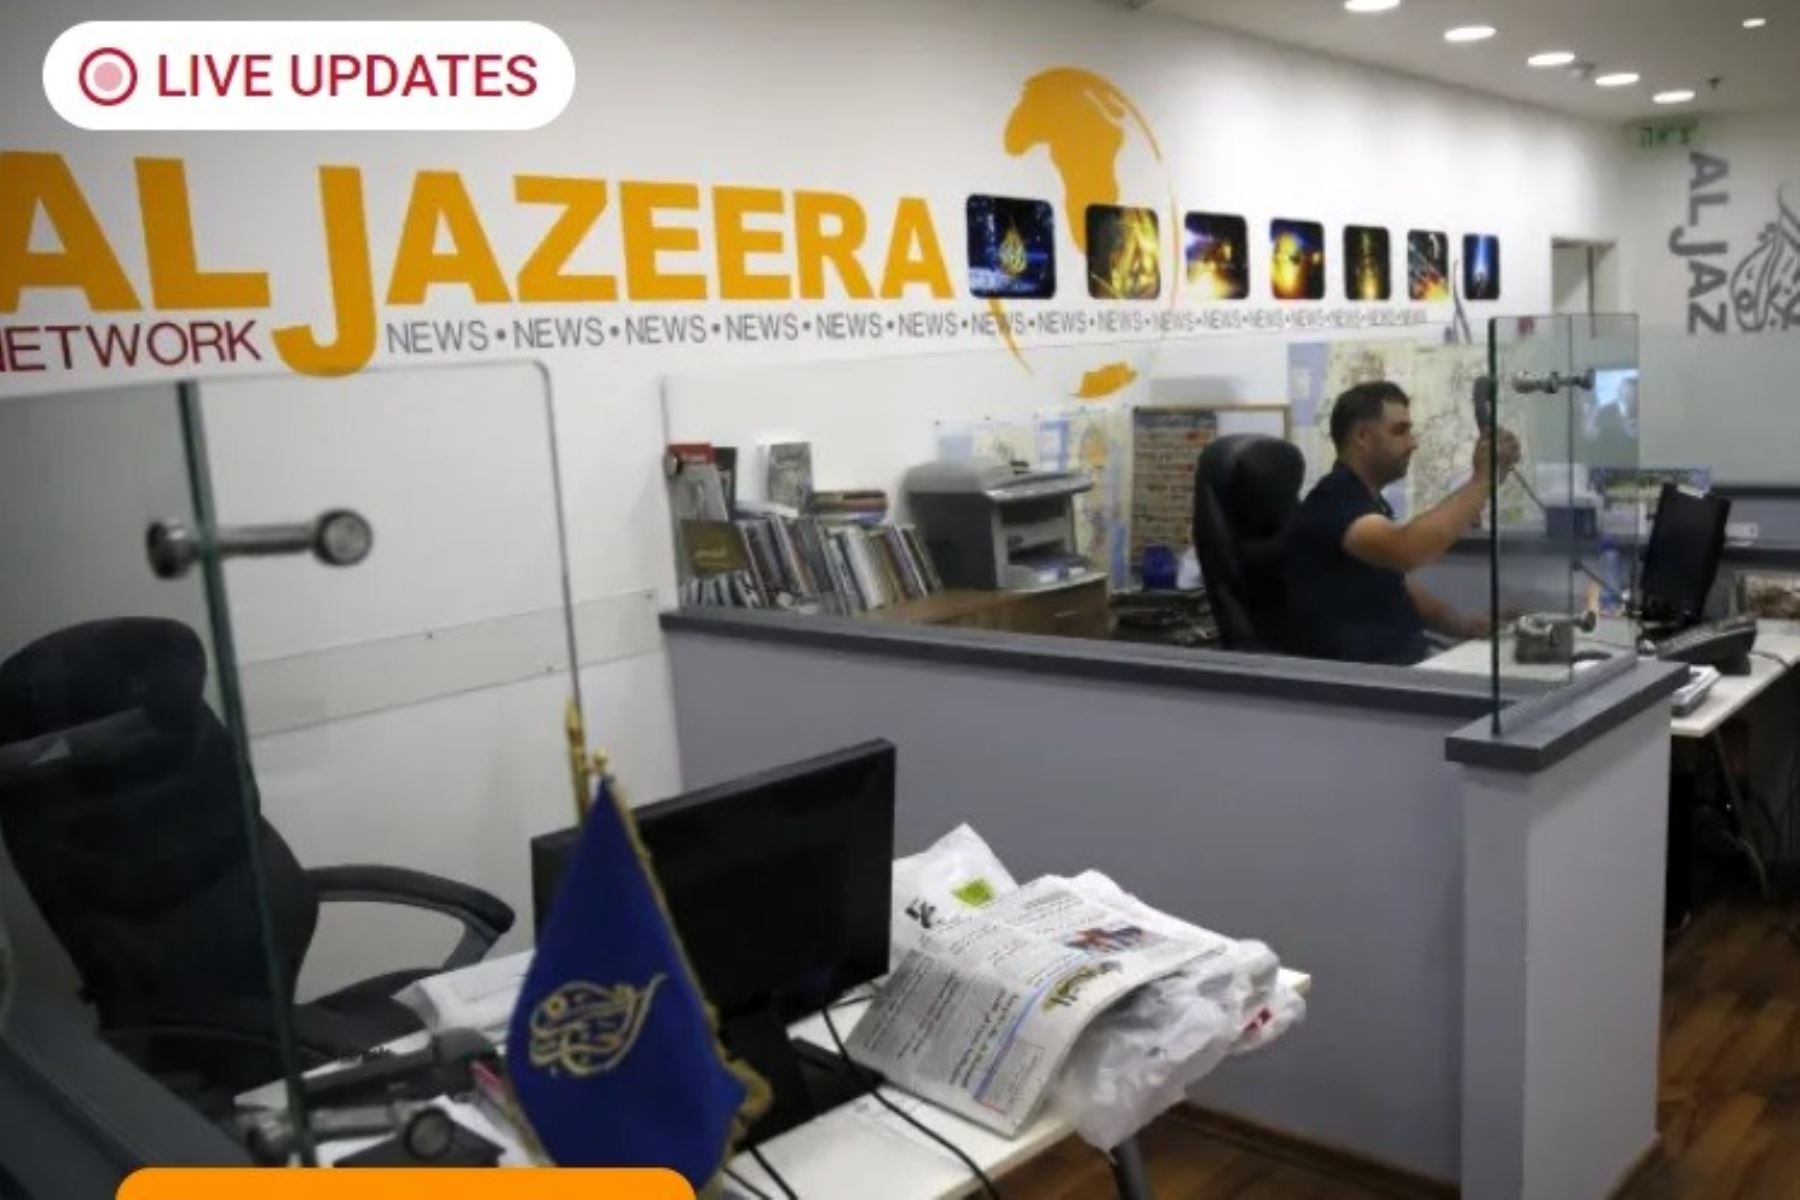 Captura de pantalla de la página web de la cadena de noticias catarí Al Jazeera. Imagen: Internet/Medios.